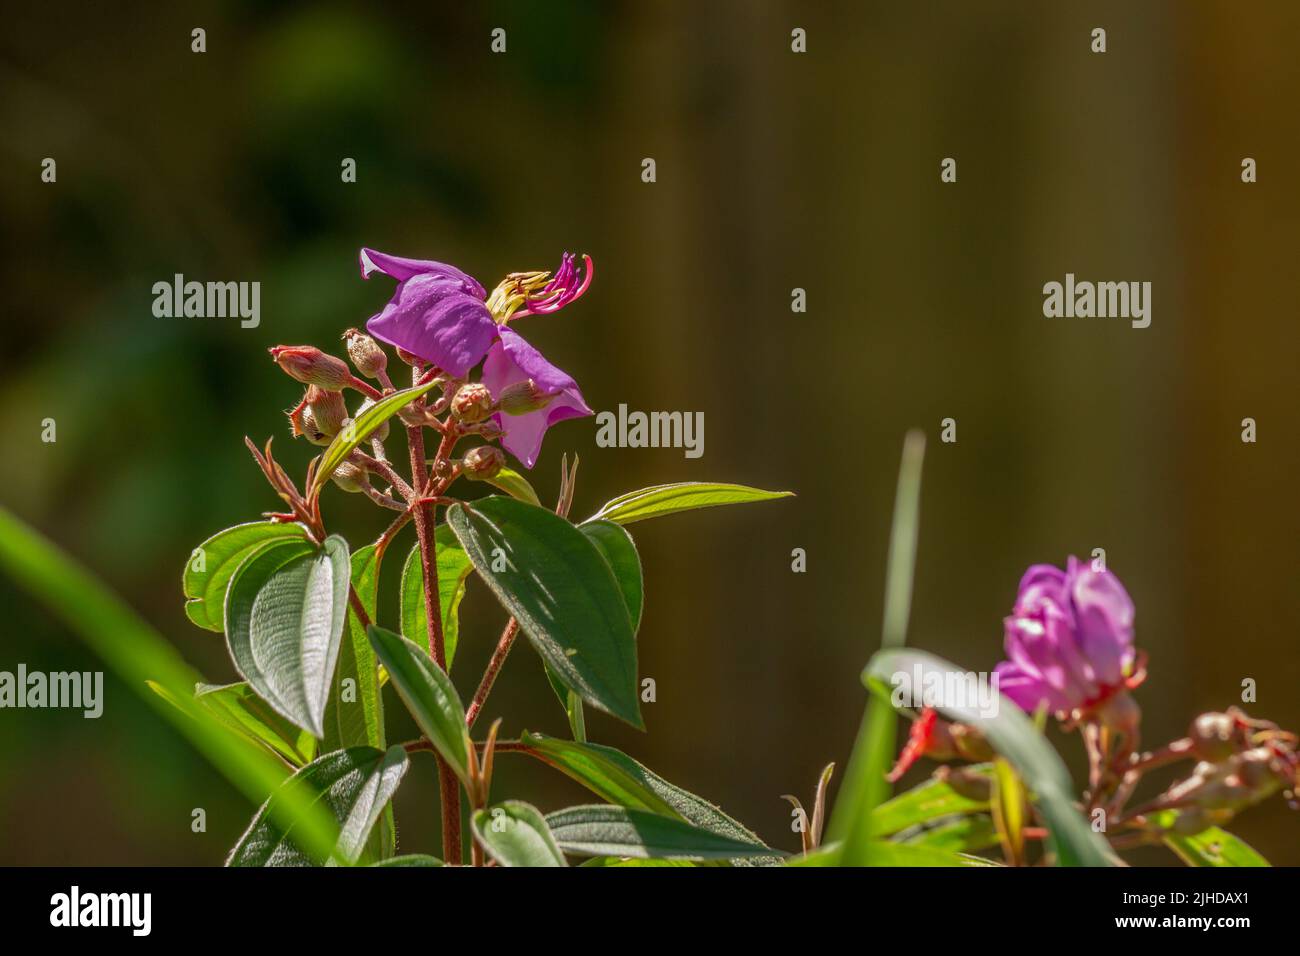 Flores y frutos de la planta del rododendro indio, pétalos púrpura, hojas verdes en forma de corazón con una superficie áspera. Vegetación natural de montaña Foto de stock